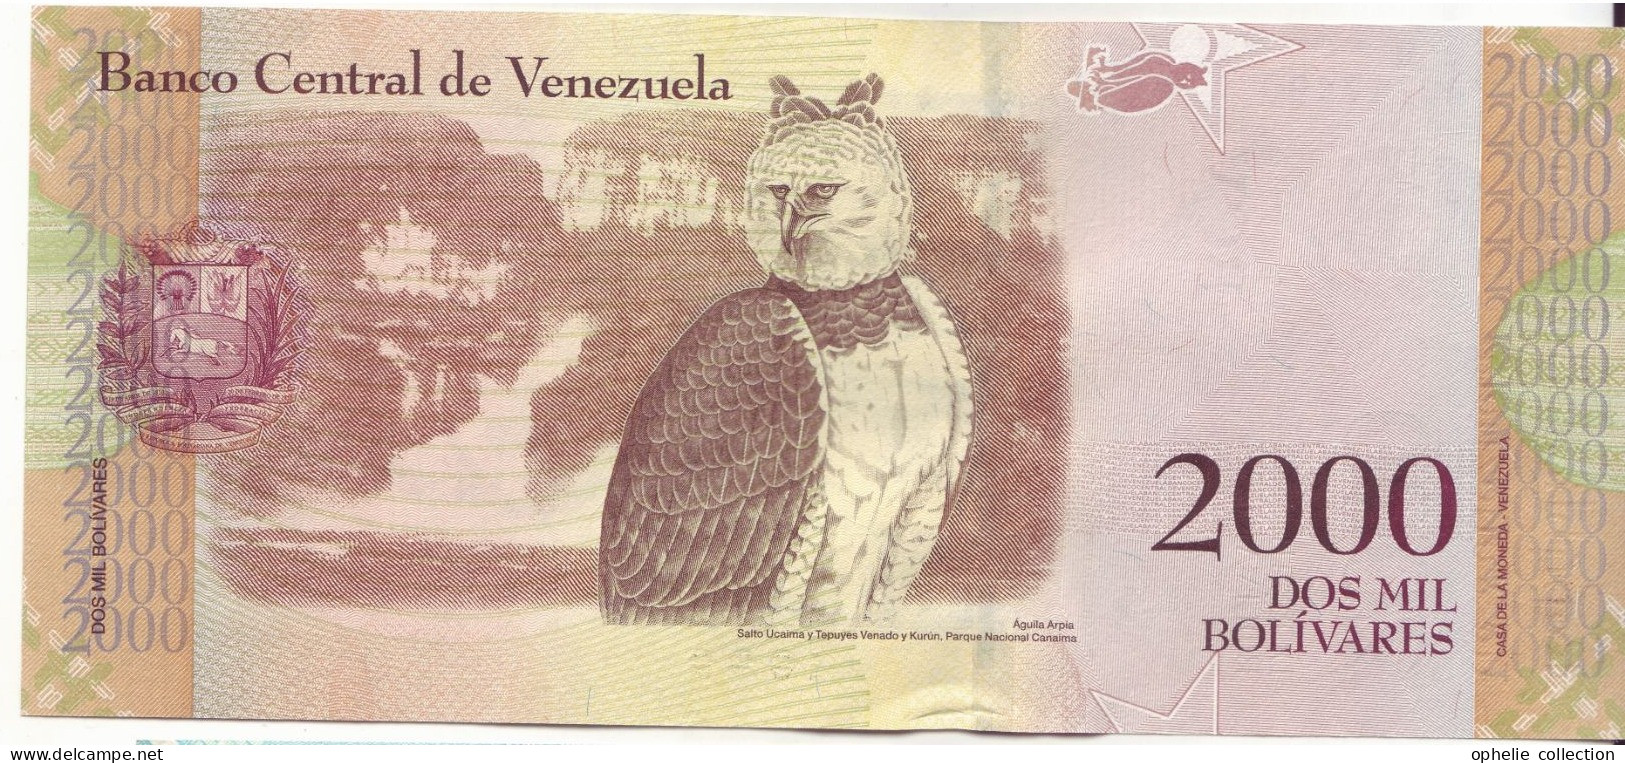 Amérique - Vénézuela - Billet De Collection - PK N°96 - 2000 Bolivares - 80 - Other - America